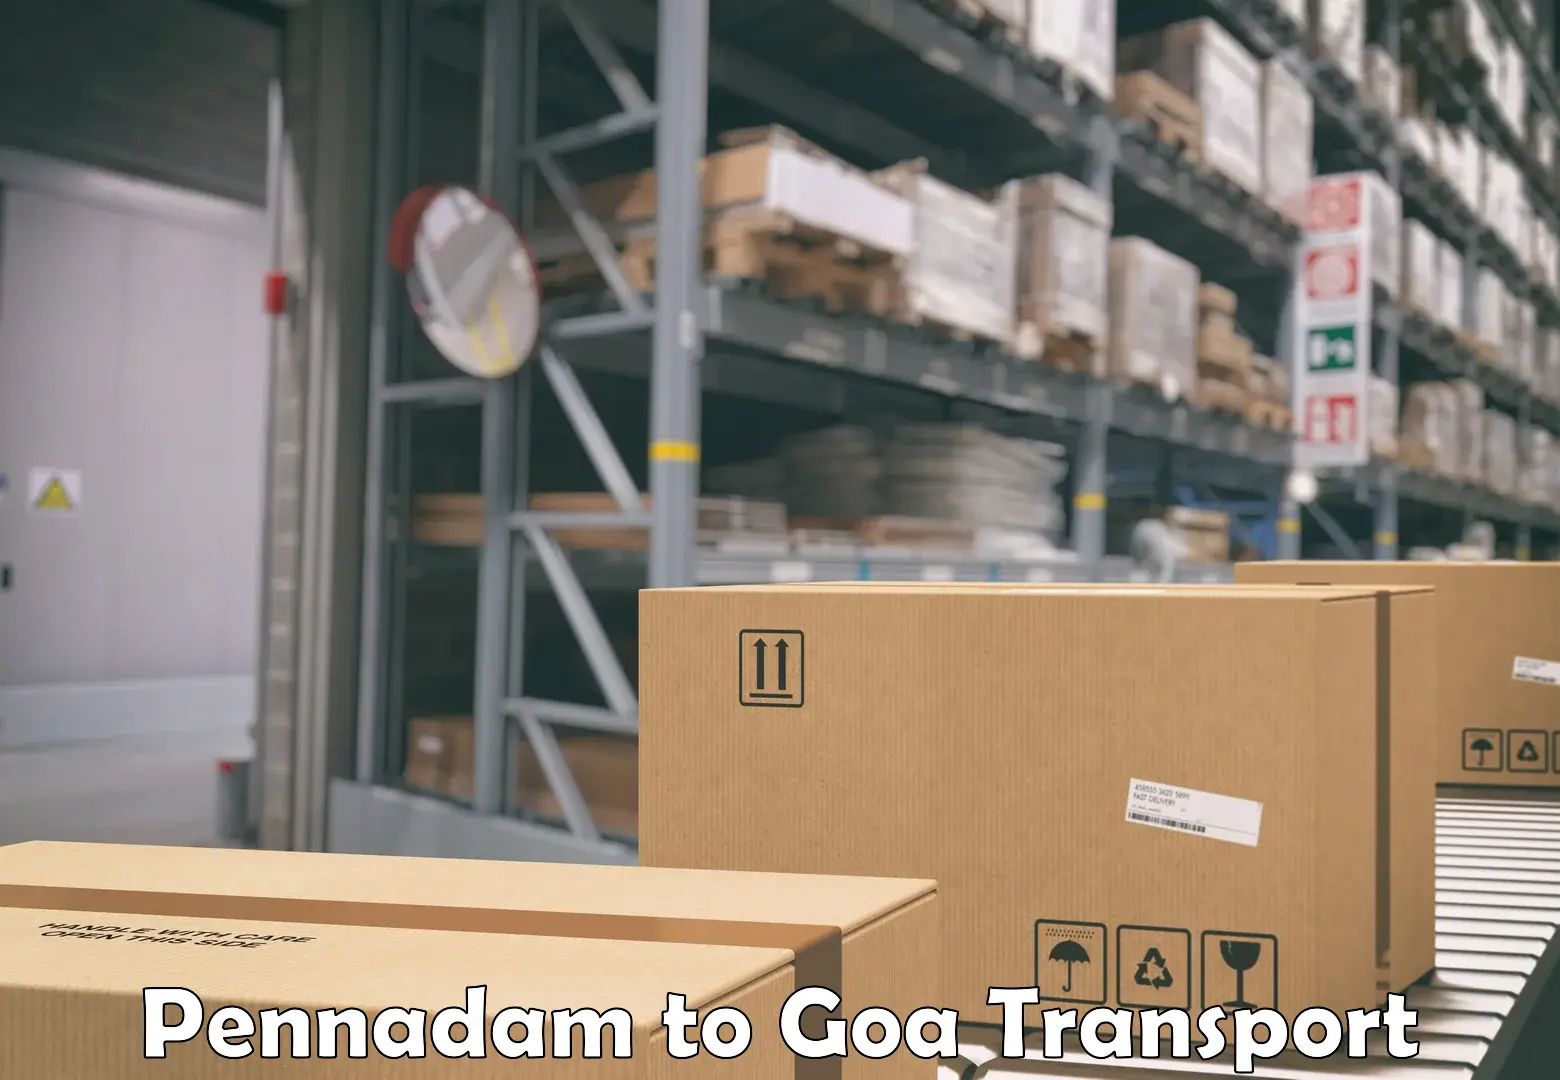 Furniture transport service Pennadam to Goa